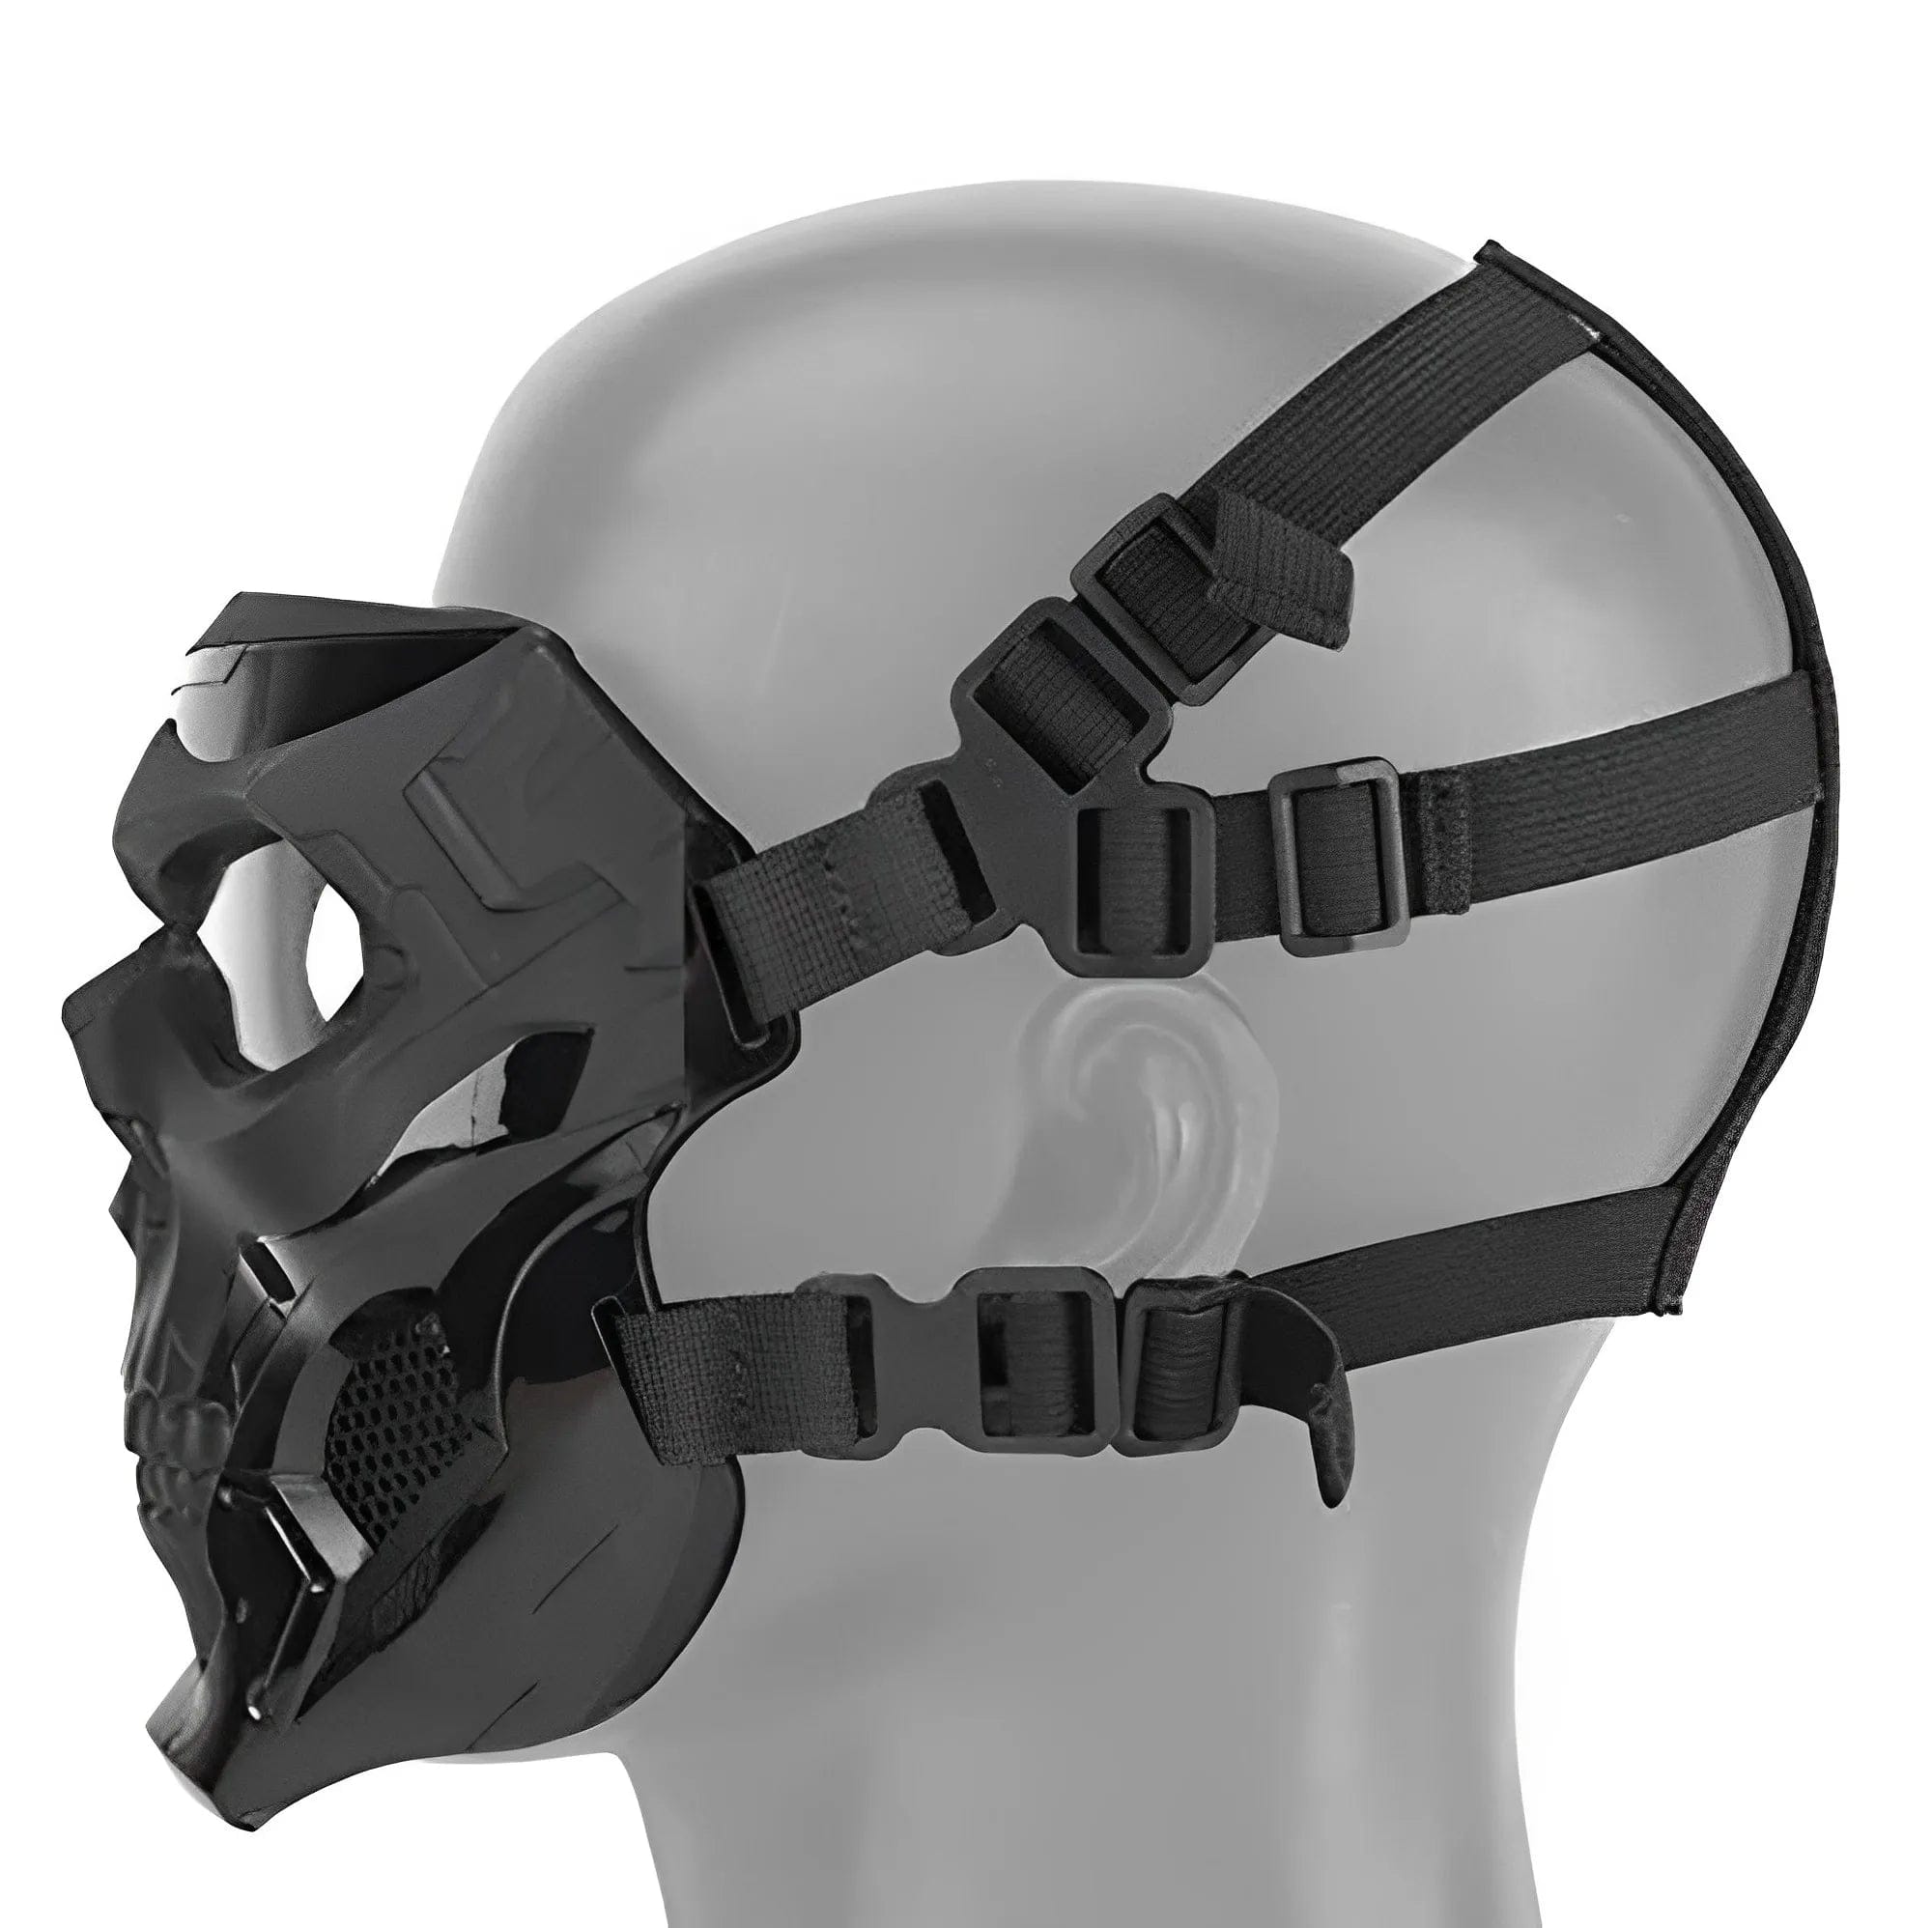 Vollschutzmaske mit Helm / Paintball, Airsoft Maske